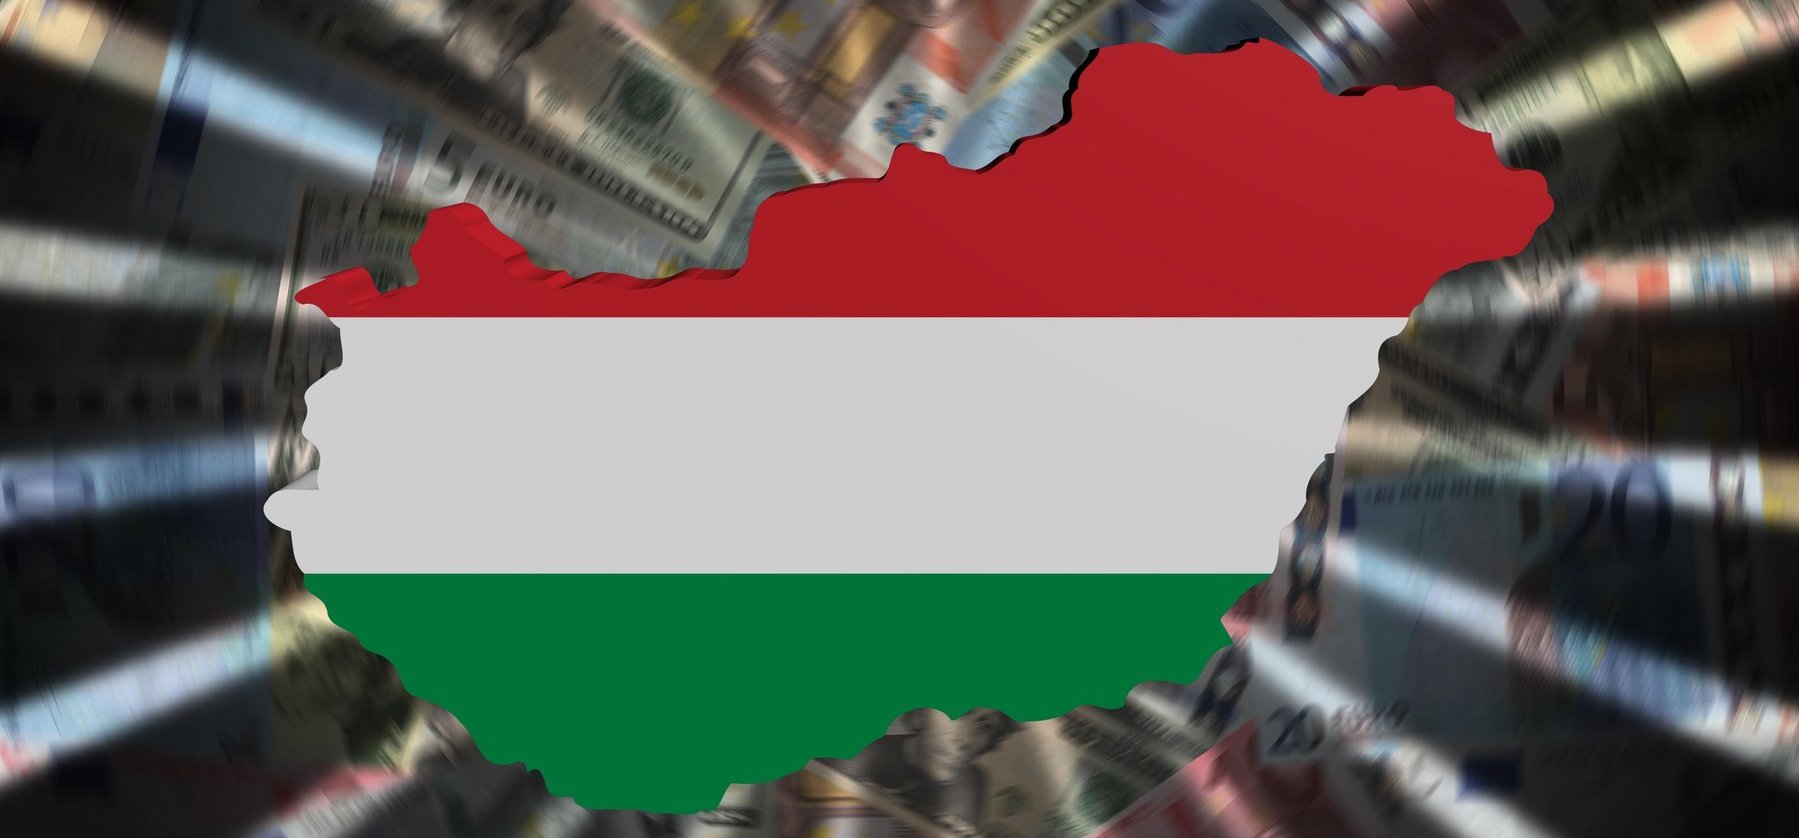 Tudod, hol van Magyarország legmélyebb pontja? Elképesztő látvány, erre tuti, hogy nem gondoltál volna - videó